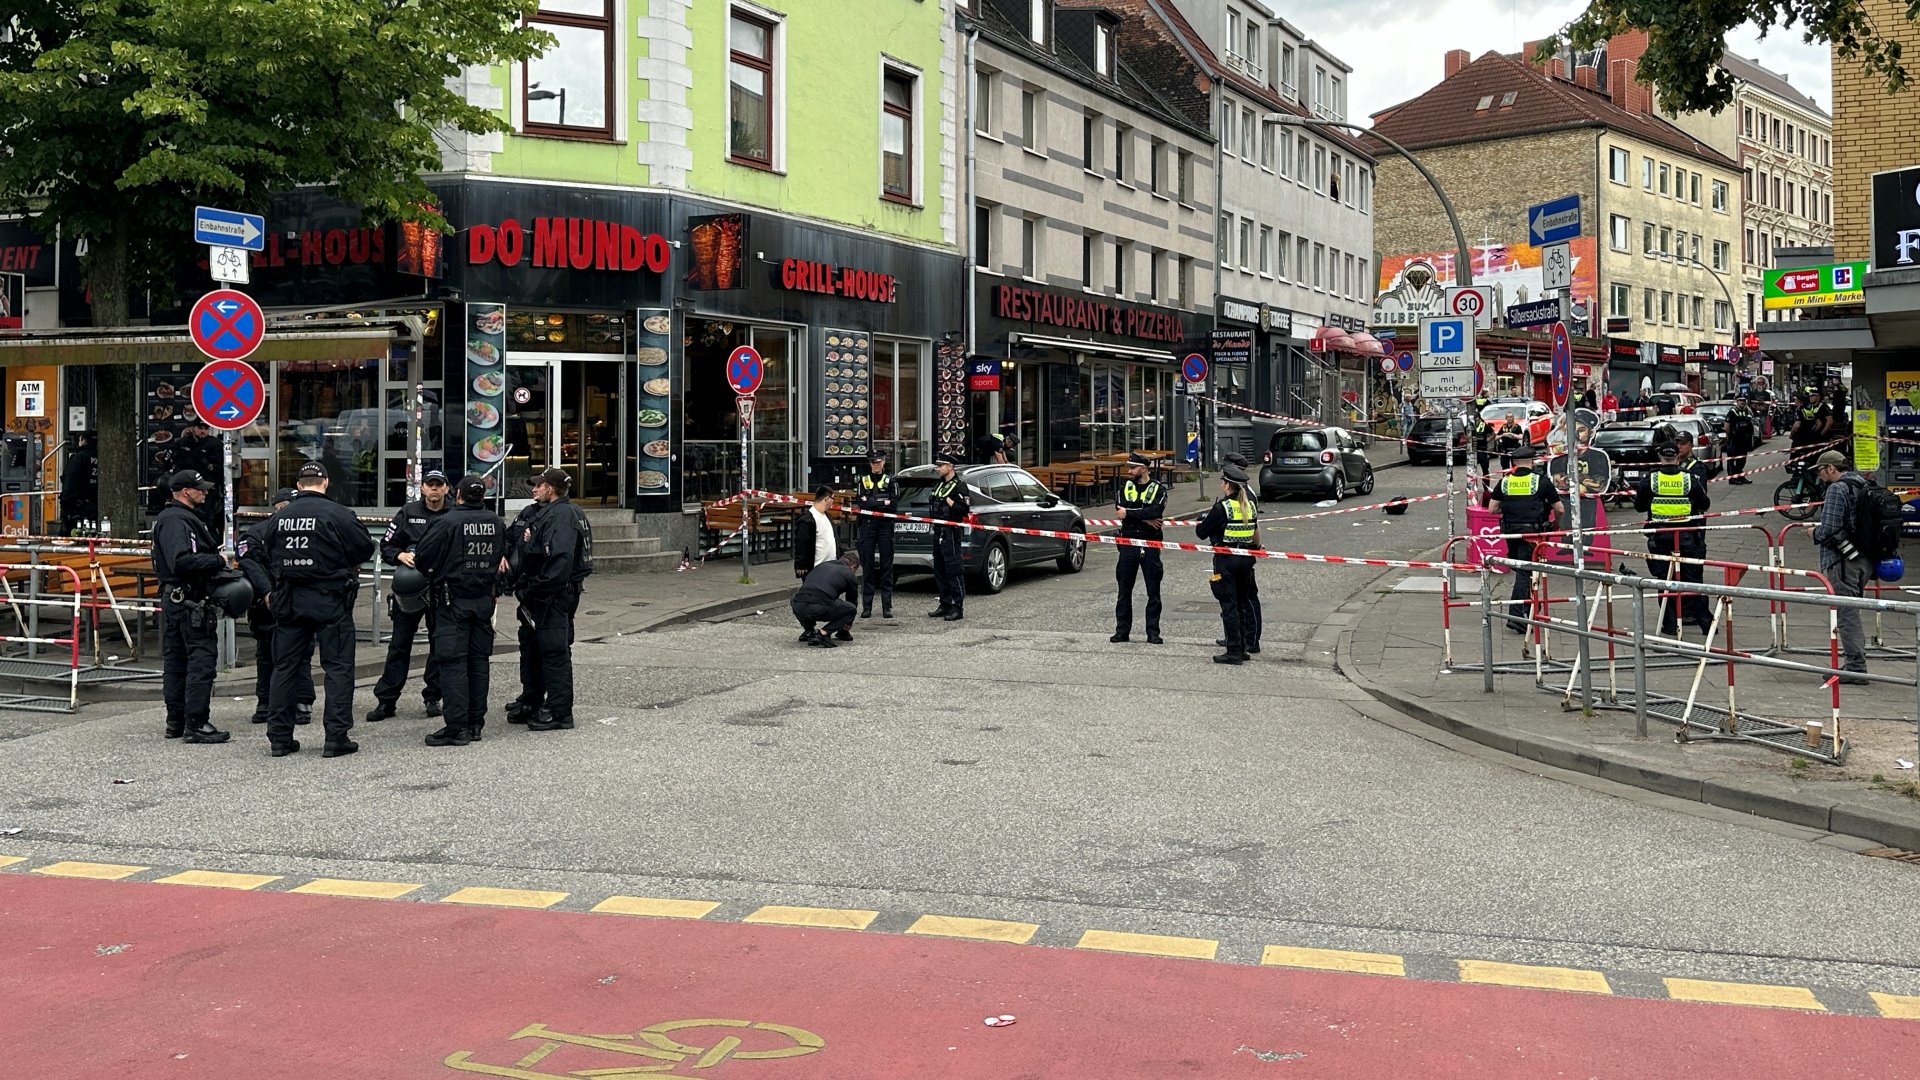 A rendőrség lezárt egy területet, miután meglőttek egy csákánnyal és Molotov-koktéllal felfegyverkezett férfit a Reeperbahn közelében Hamburg-St. Pauliban